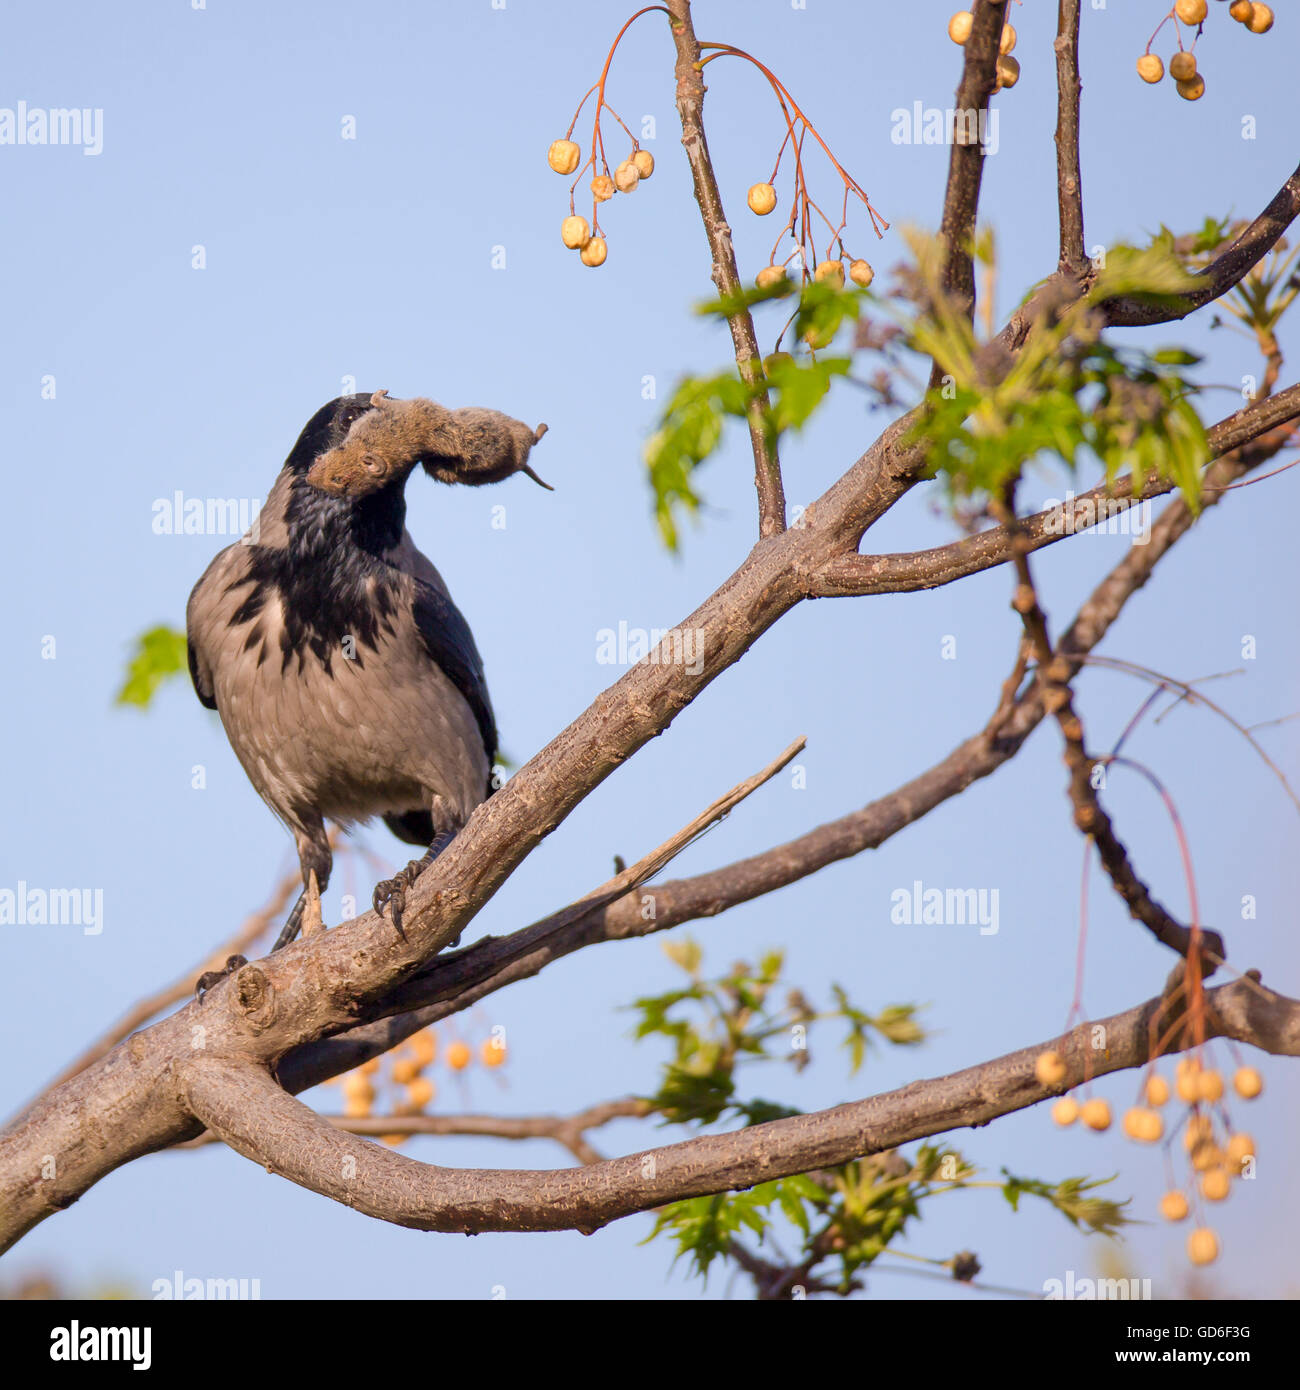 Hooded crow (Corvus cornix) avec une souris dans son projet de loi. Photographié en Israël en mars Banque D'Images